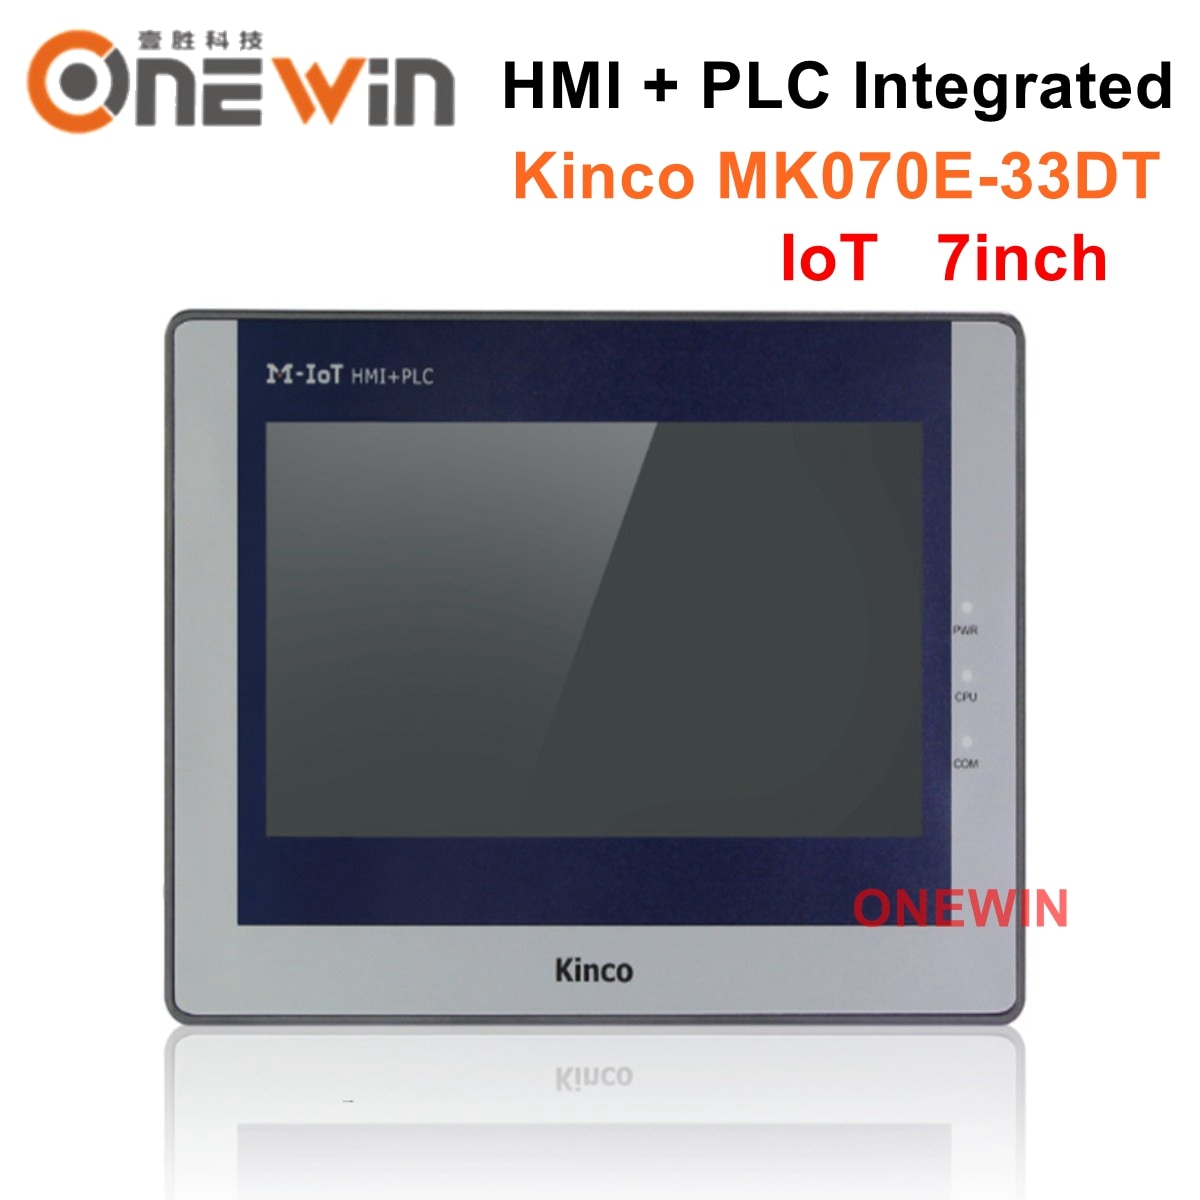 Kinco MK070E-33DT HMI PLC ο ġ ũ, α..